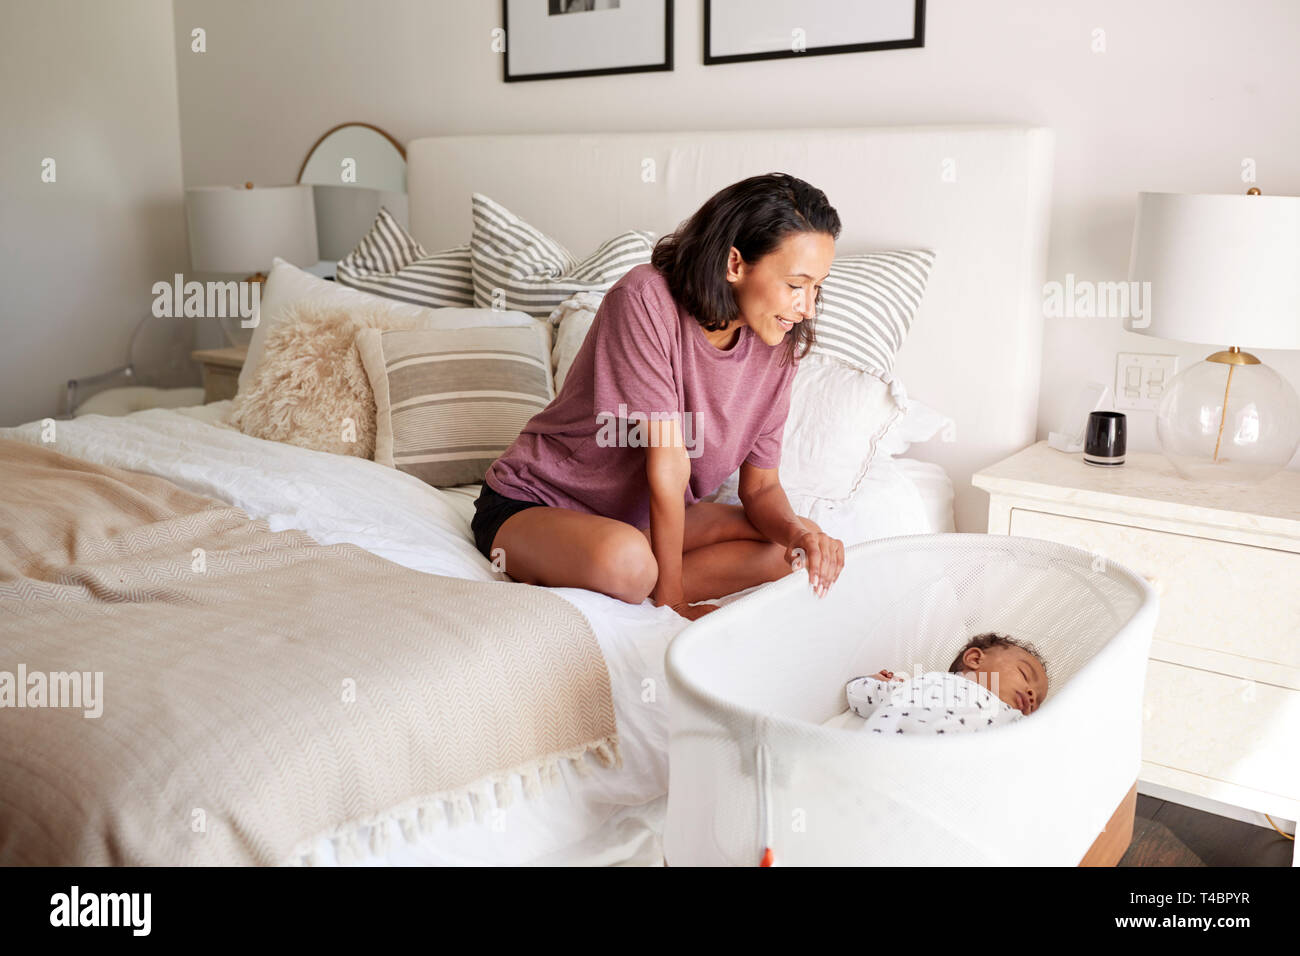 Adulto joven madre sentada en su cama mirando hacia abajo a su bebé de tres meses durmiendo en su cuna Foto de stock